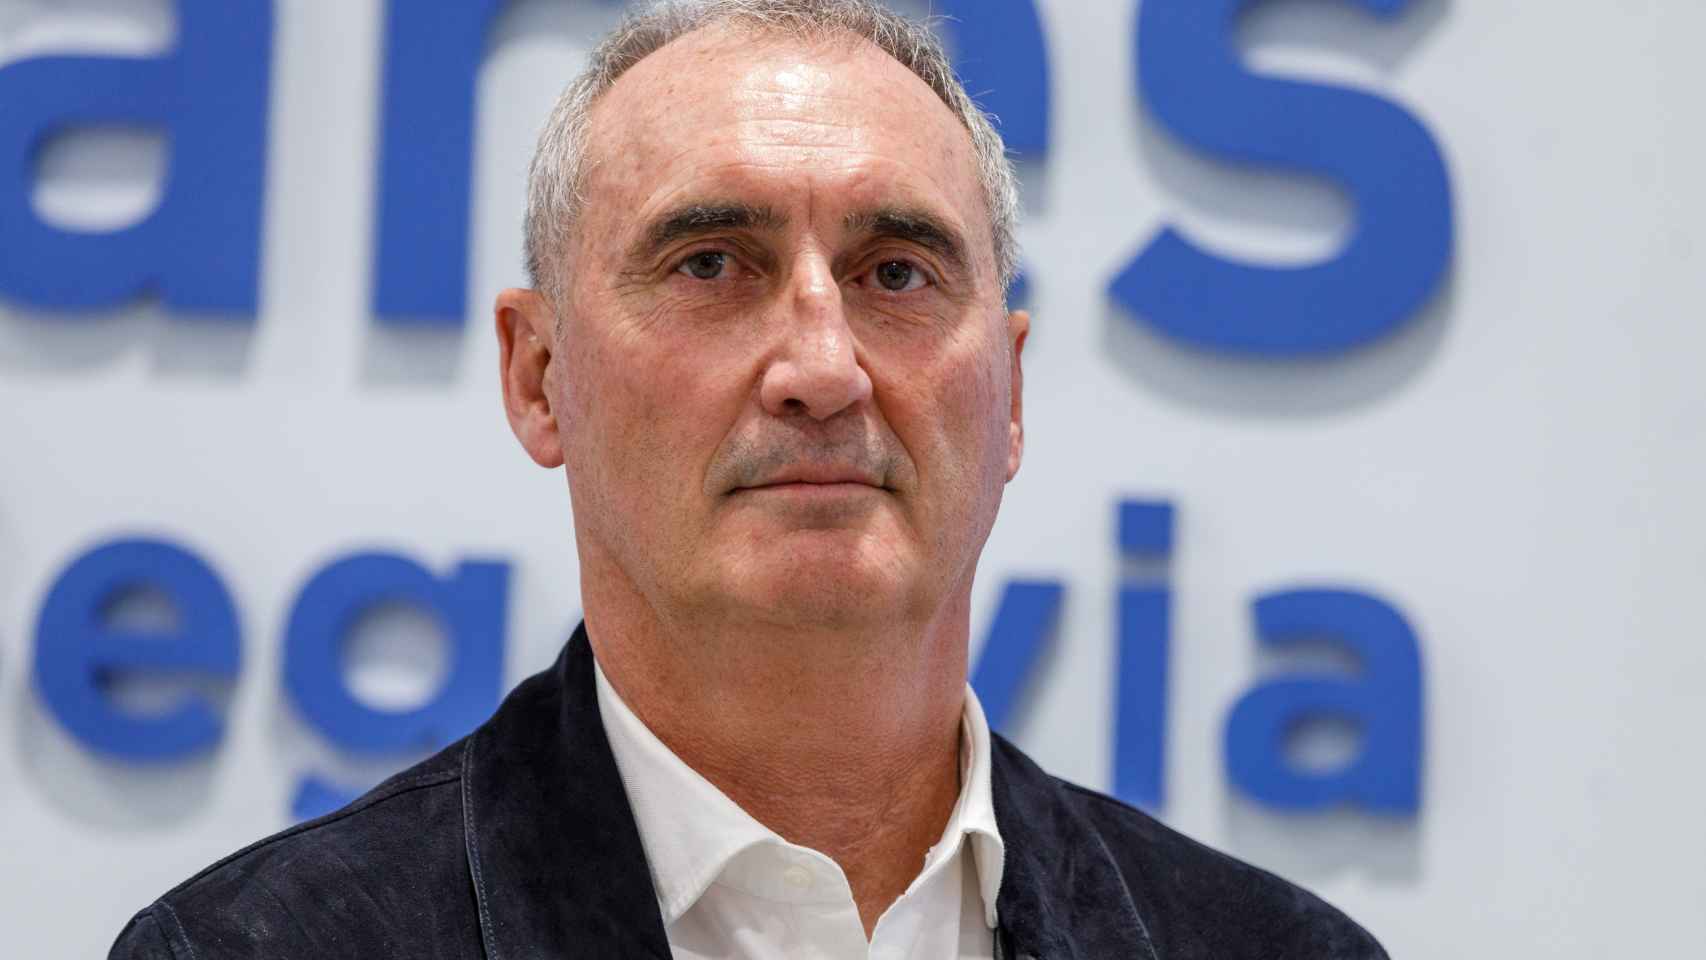 El actual delegado territorial de la Junta de Castilla y León en Segovia, José Mazarías Pérez, de 59 años, ha sido designado hoy candidato del Partido Popular